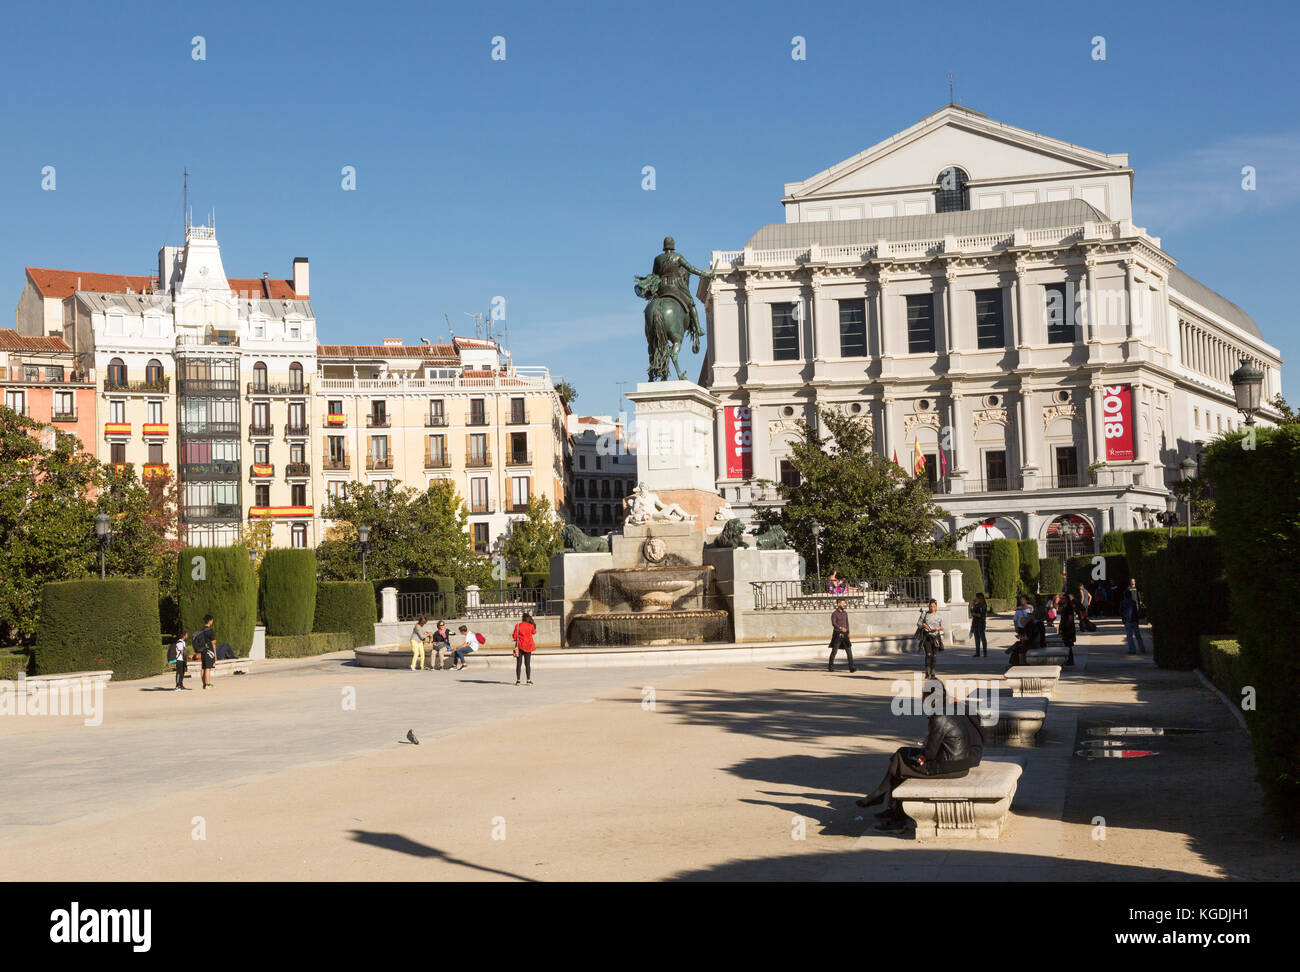 Teatro de la Ópera, la Plaza de Oriente, la estatua ecuestre de Felipe IV diseñado por Velázquez, Madrid, España Foto de stock